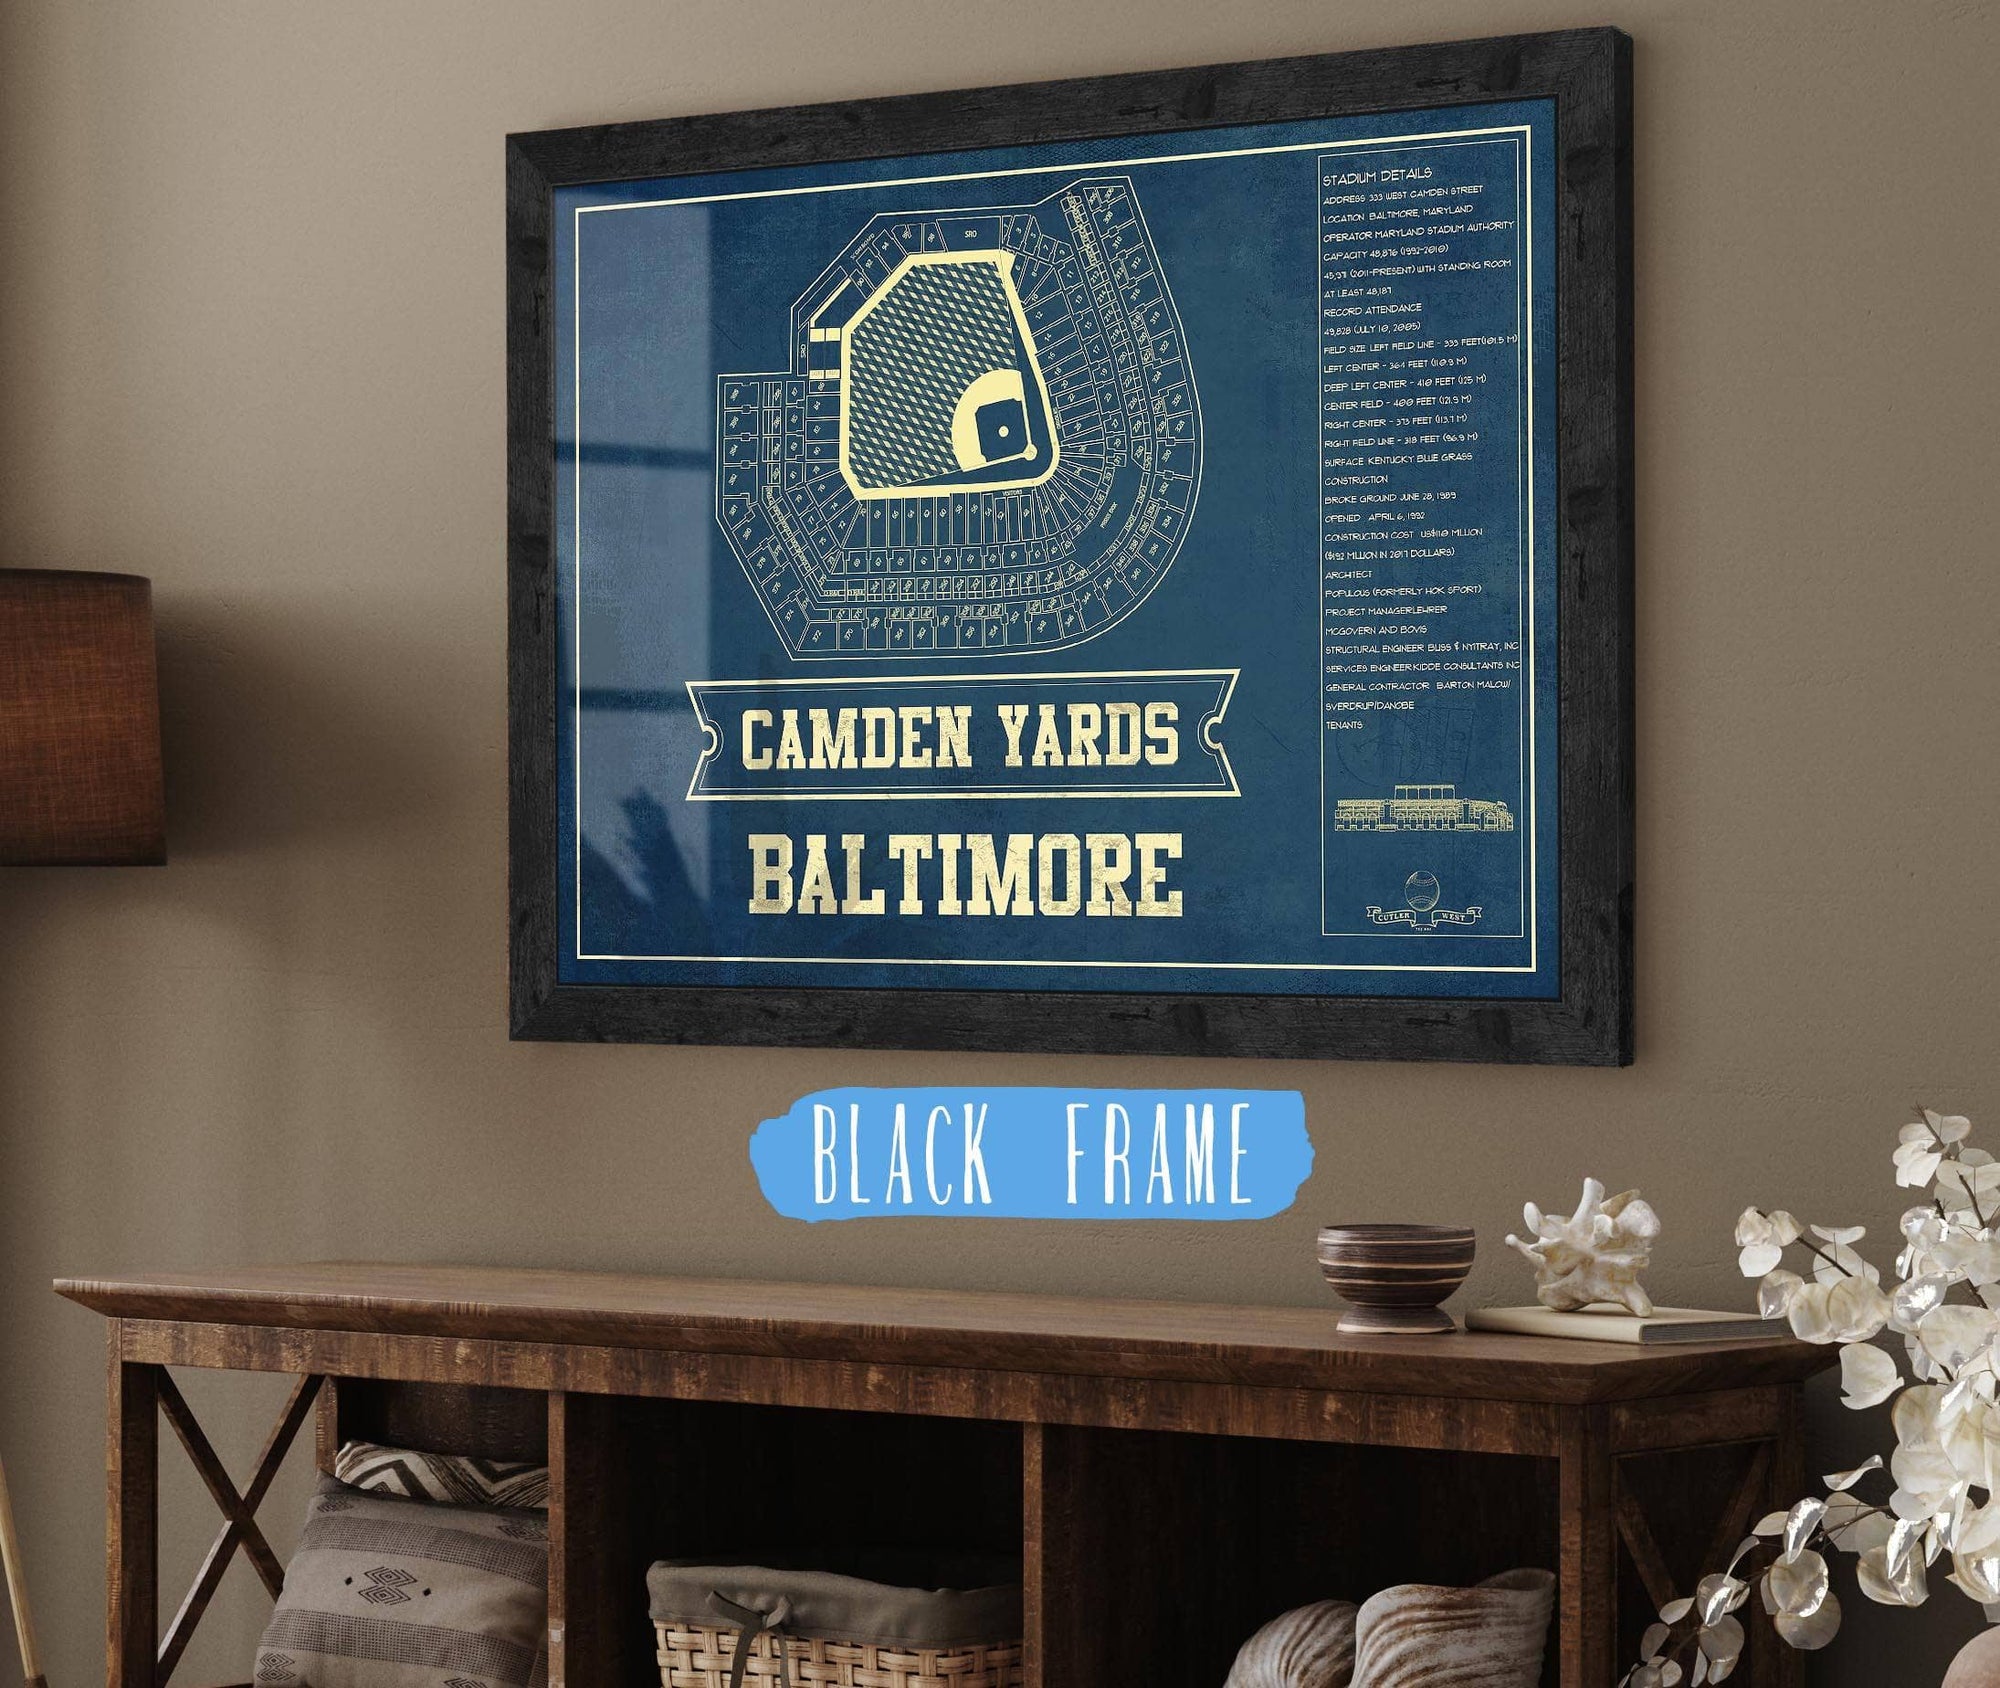 Cutler West Baseball Collection Camden Yards Art - Baltimore Orioles Baseball Print